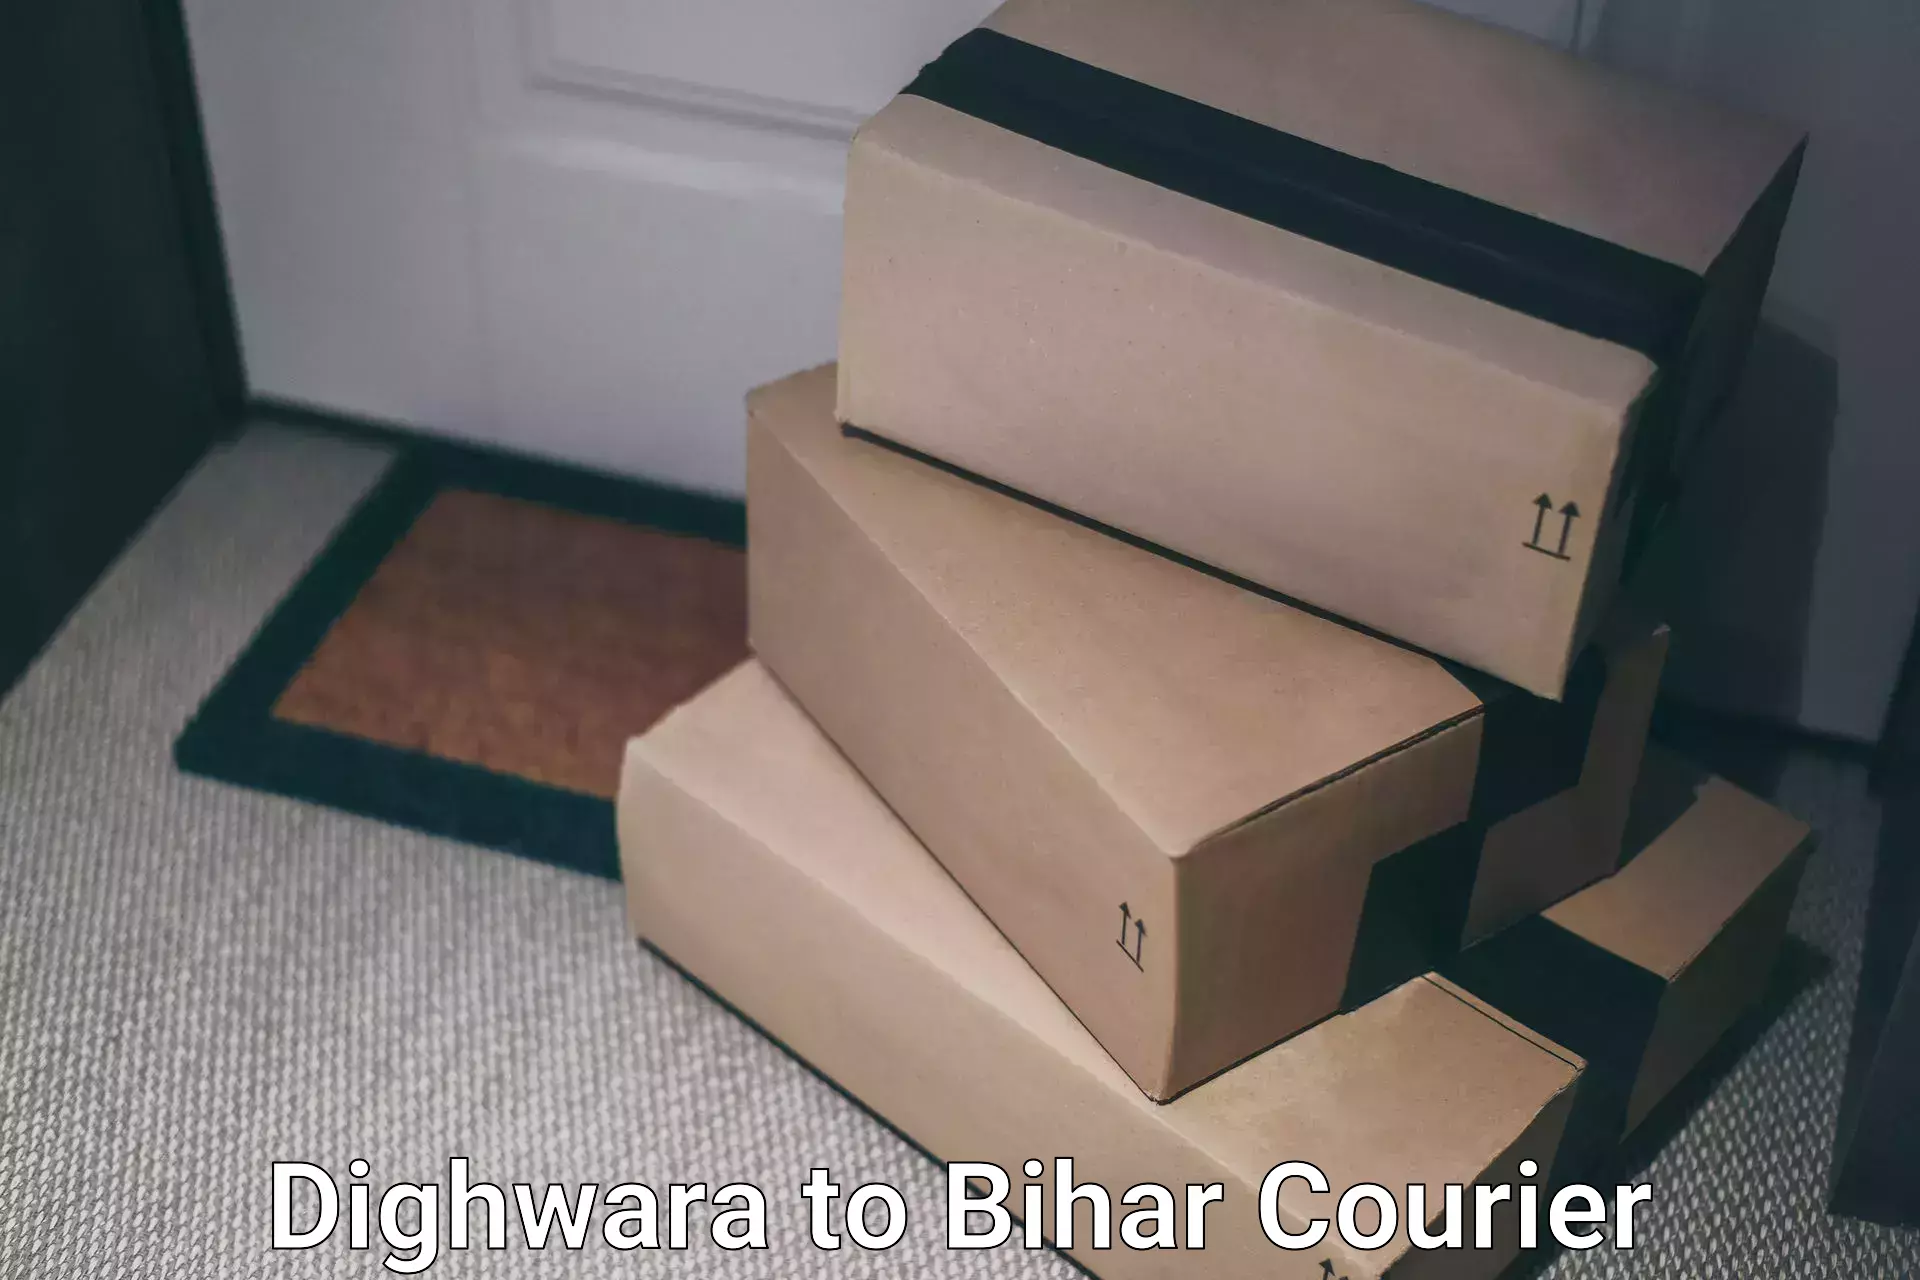 Door-to-door freight service Dighwara to Bihar